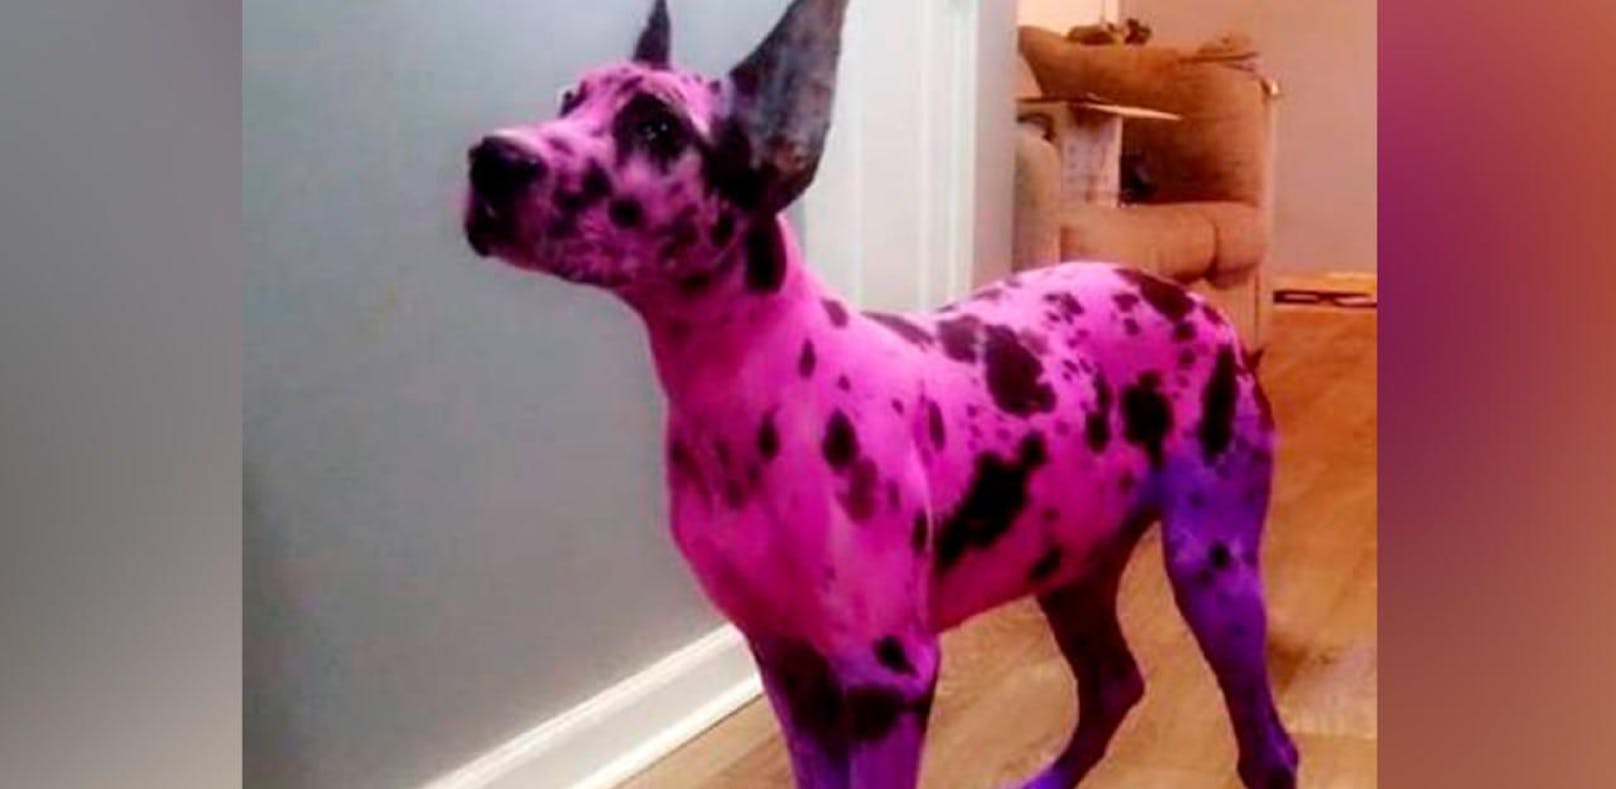 Frau färbt Dogge pink, damit sie "harmlos" wirkt